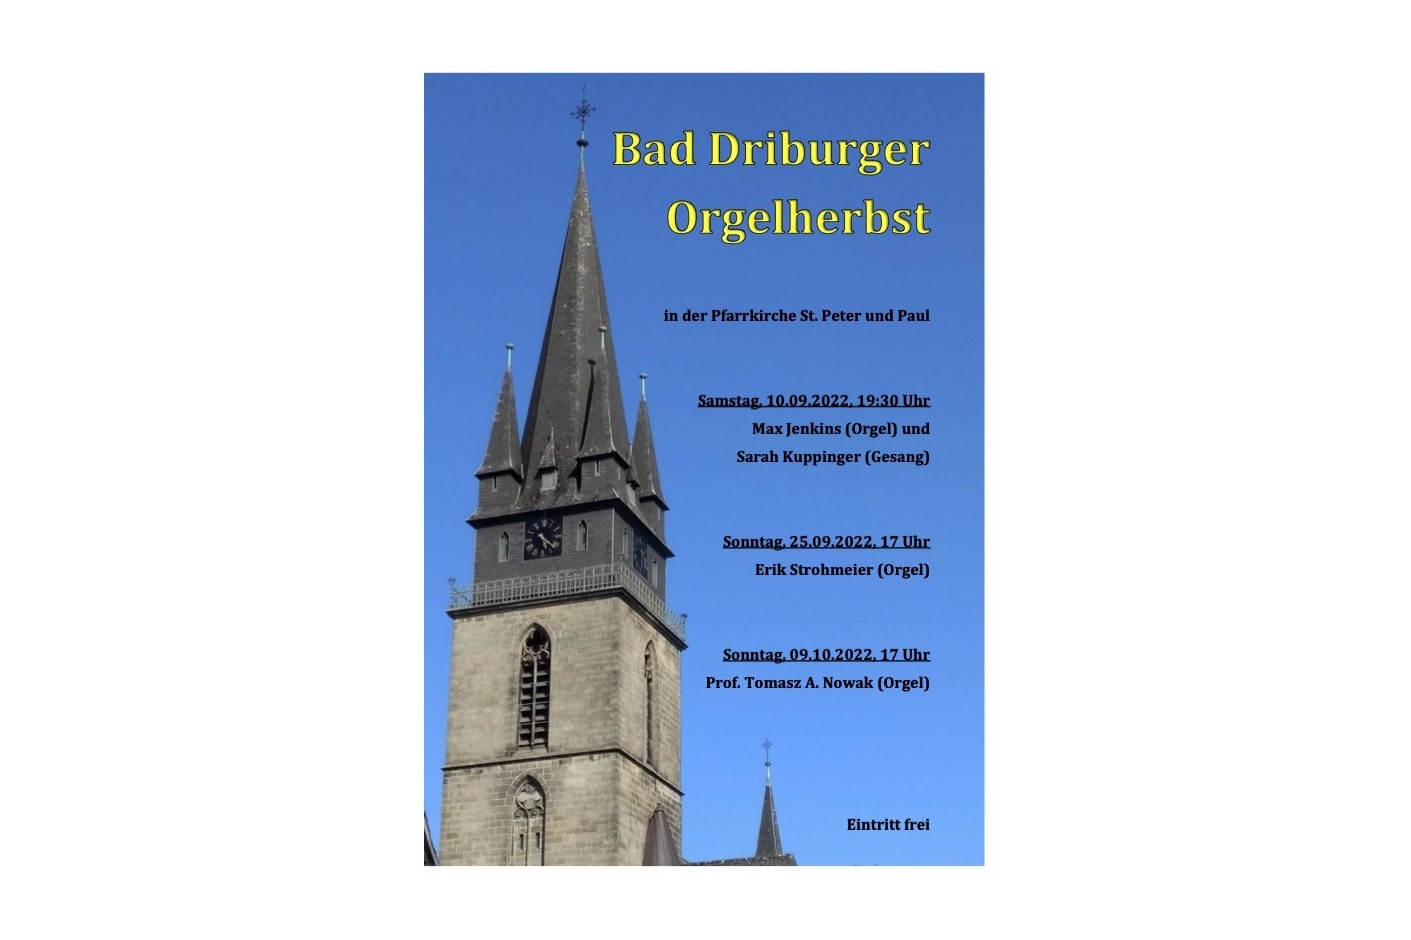 Konzertreihe „Bad Driburger Orgelherbst“ mit auswärtigen Künstlern